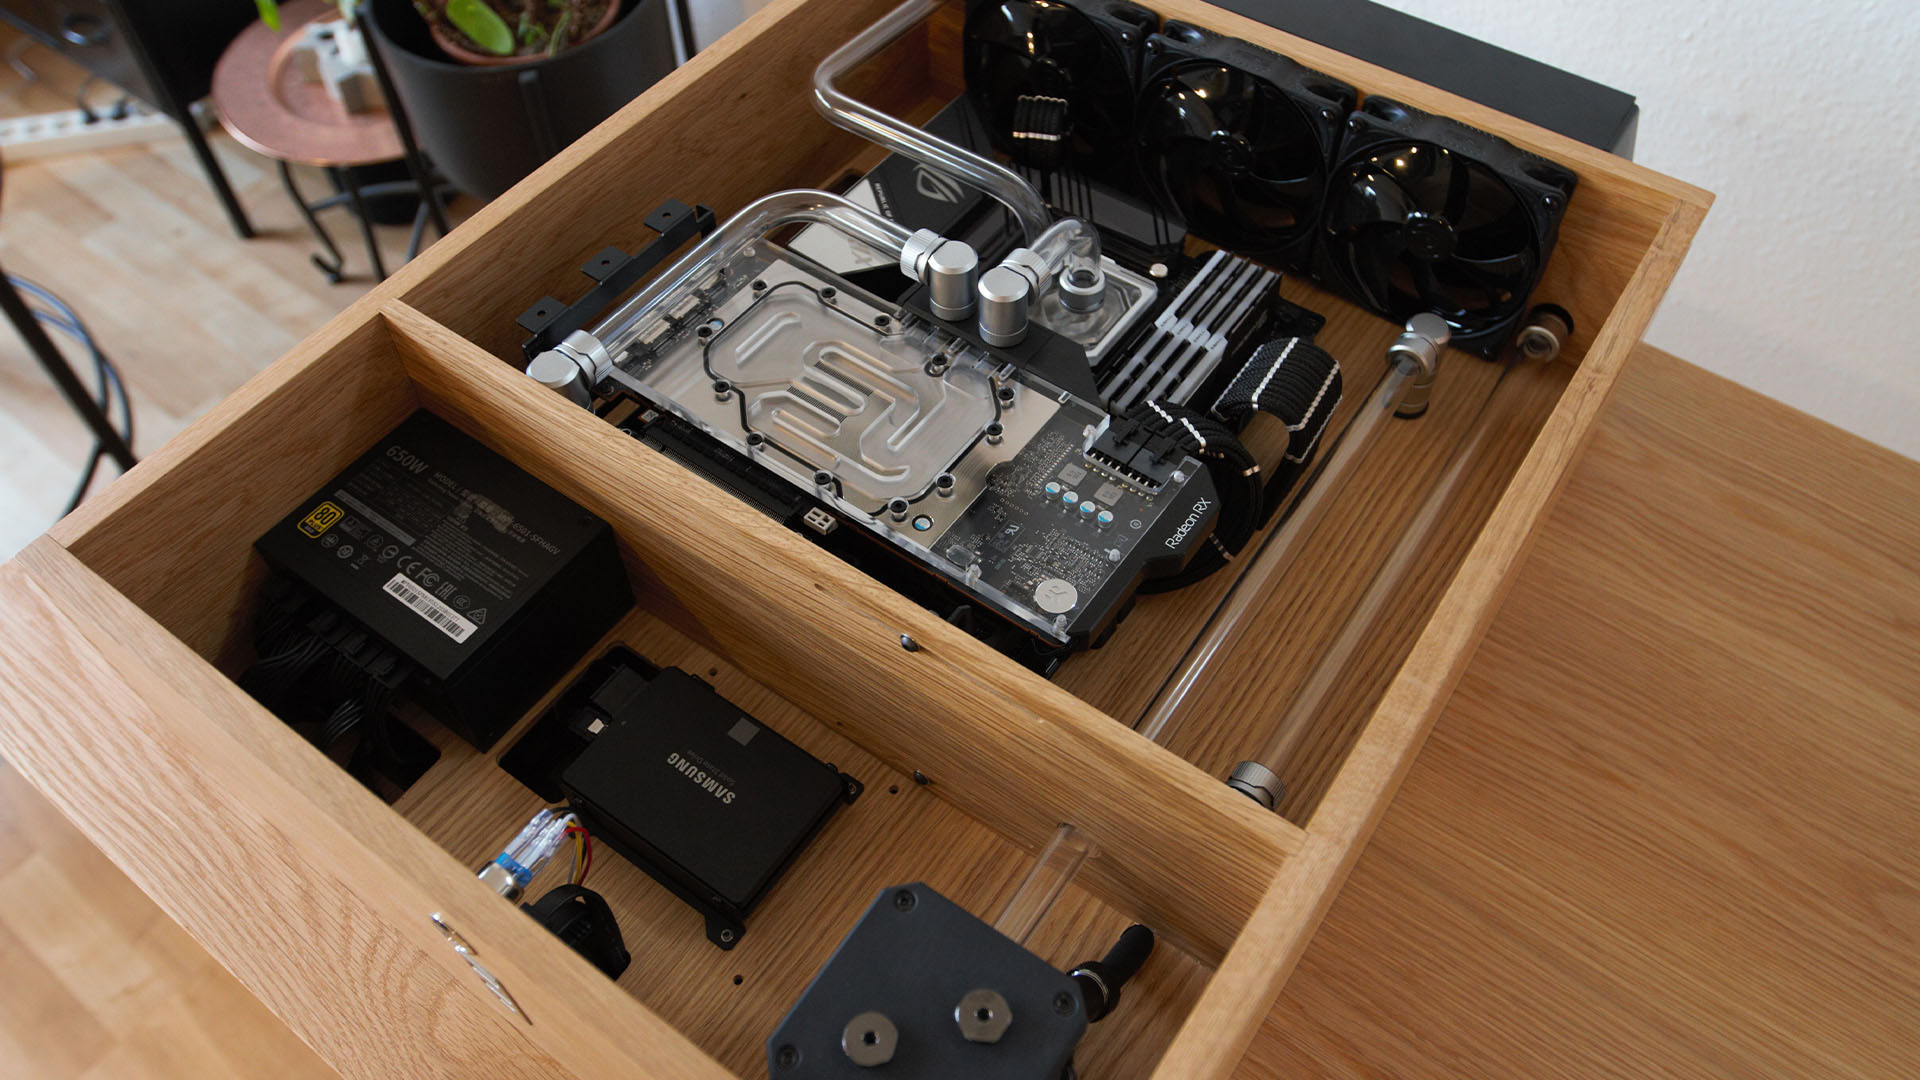 PC de bureau refroidi à l'eau en bois : composants dans le tiroir